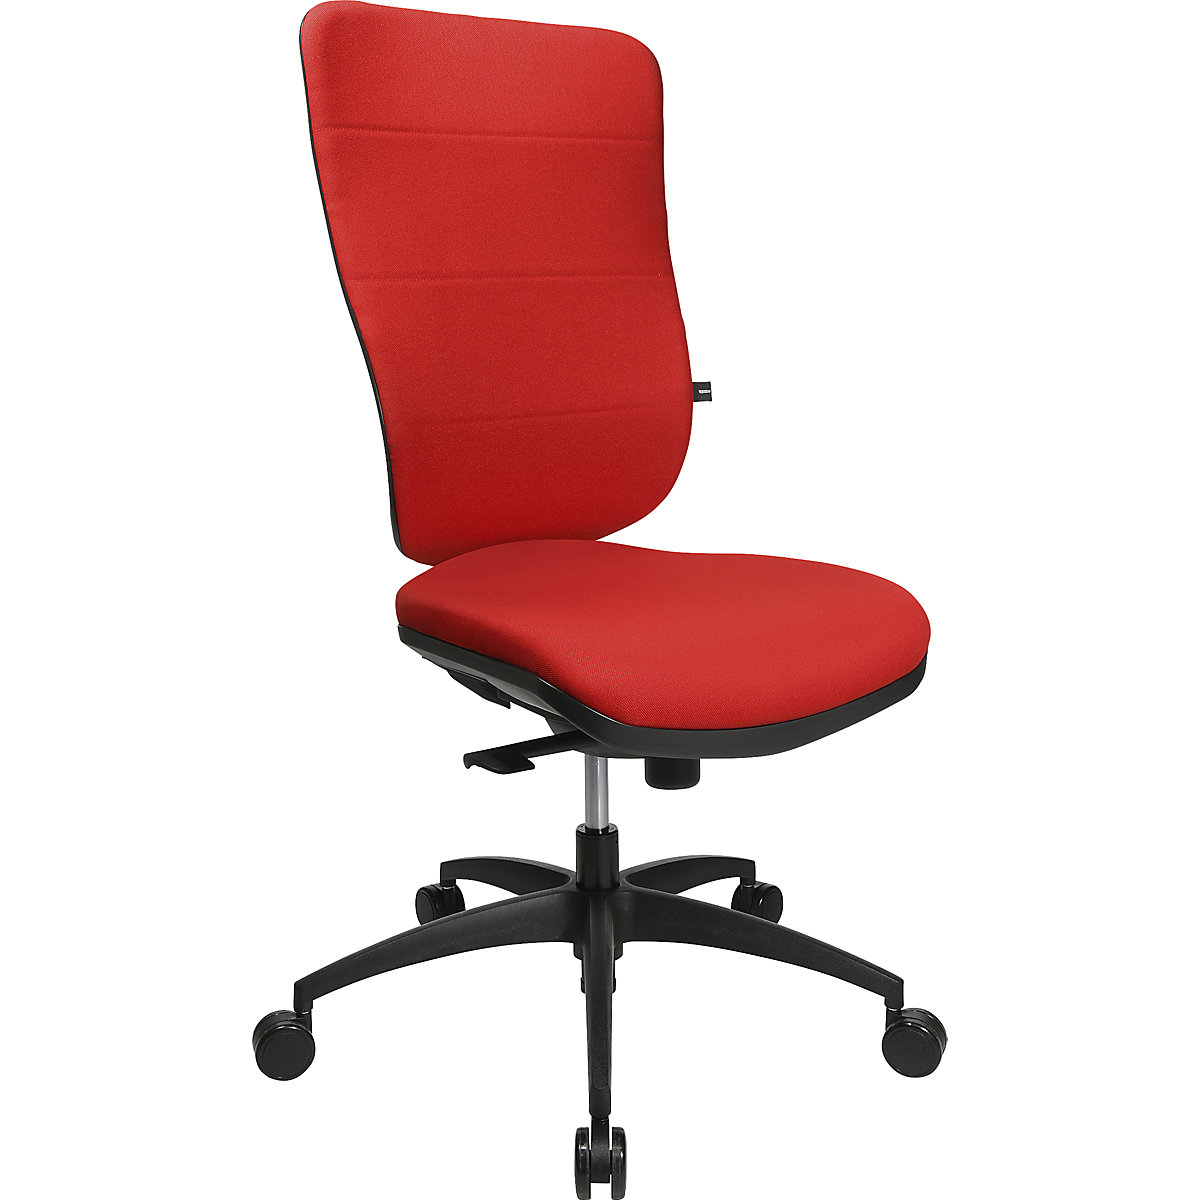 Topstar – Siège de bureau ergonomique, mécanisme synchrone, assise ergonomique, avec dossier rembourré, rouge